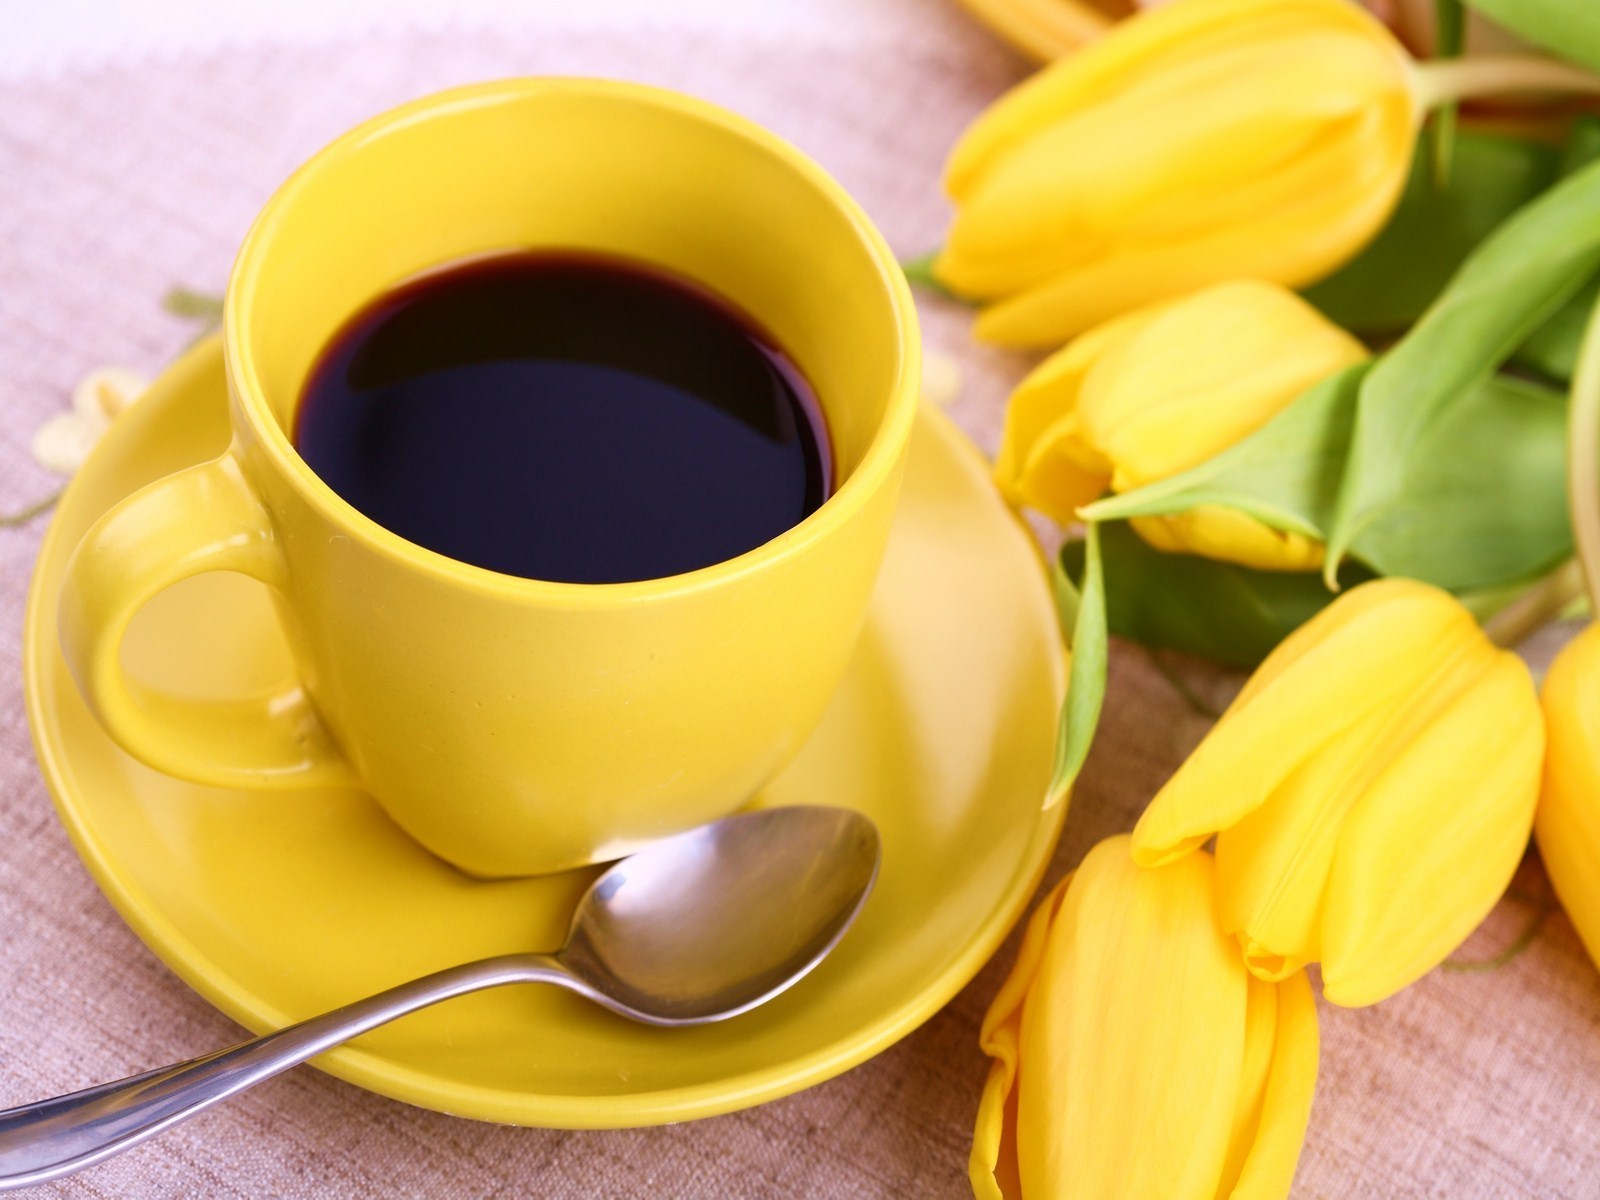 My-Morning-Coffee-deedeeflower-19544563-1600-1200.jpg